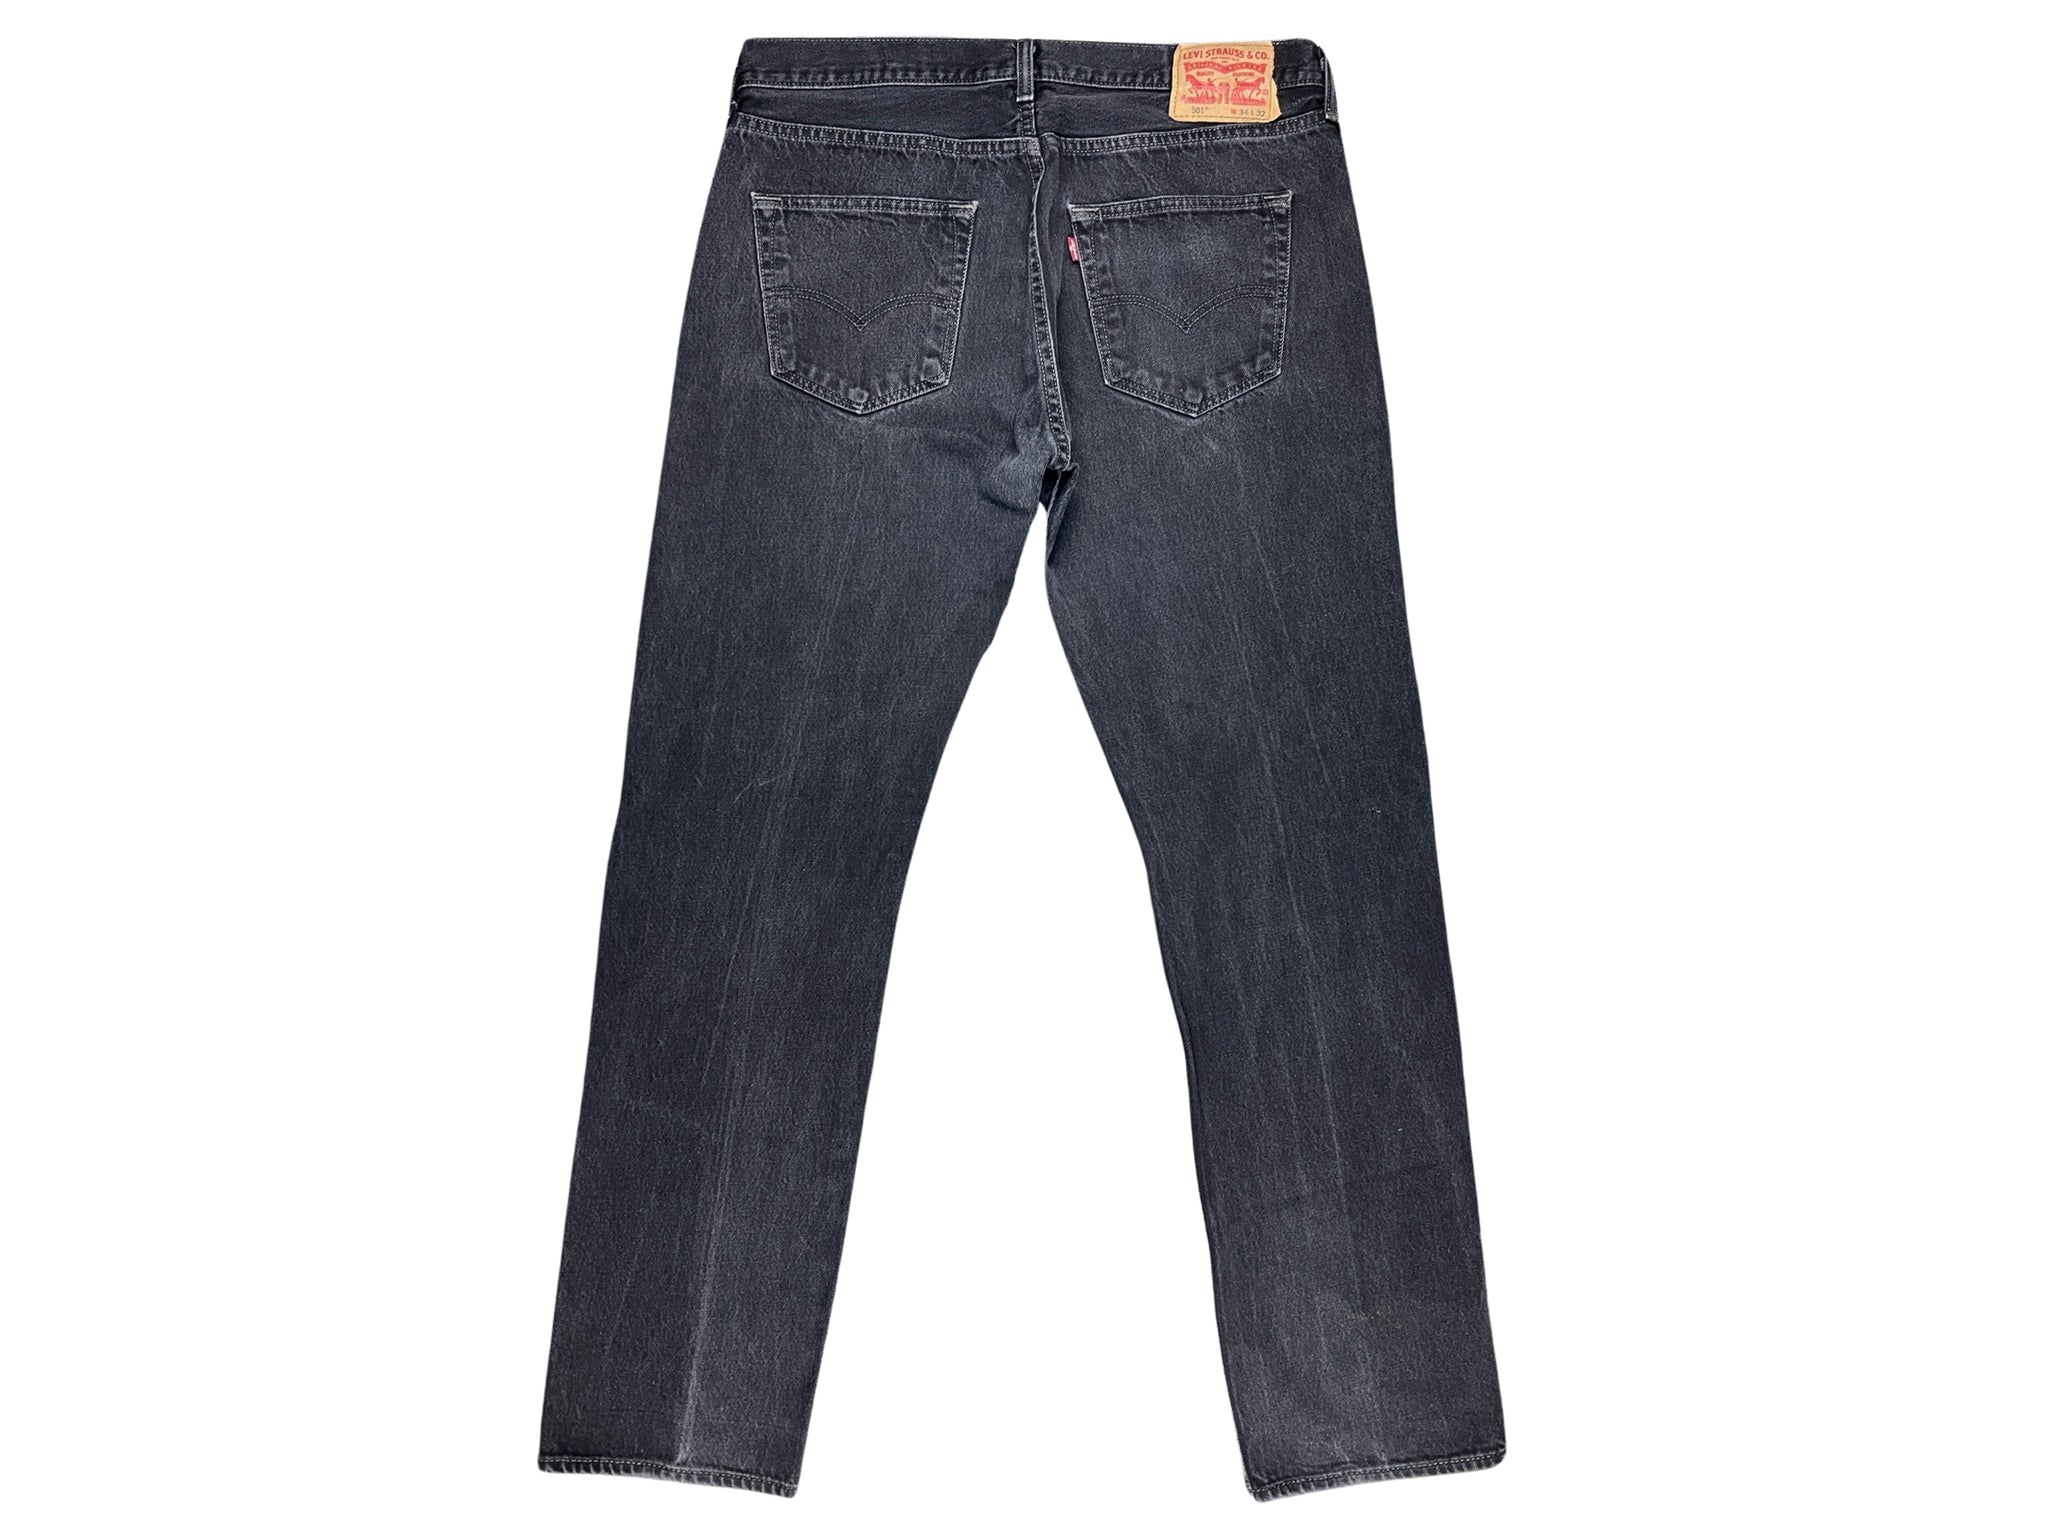 Levis Black 501 Jeans (34" x 32")